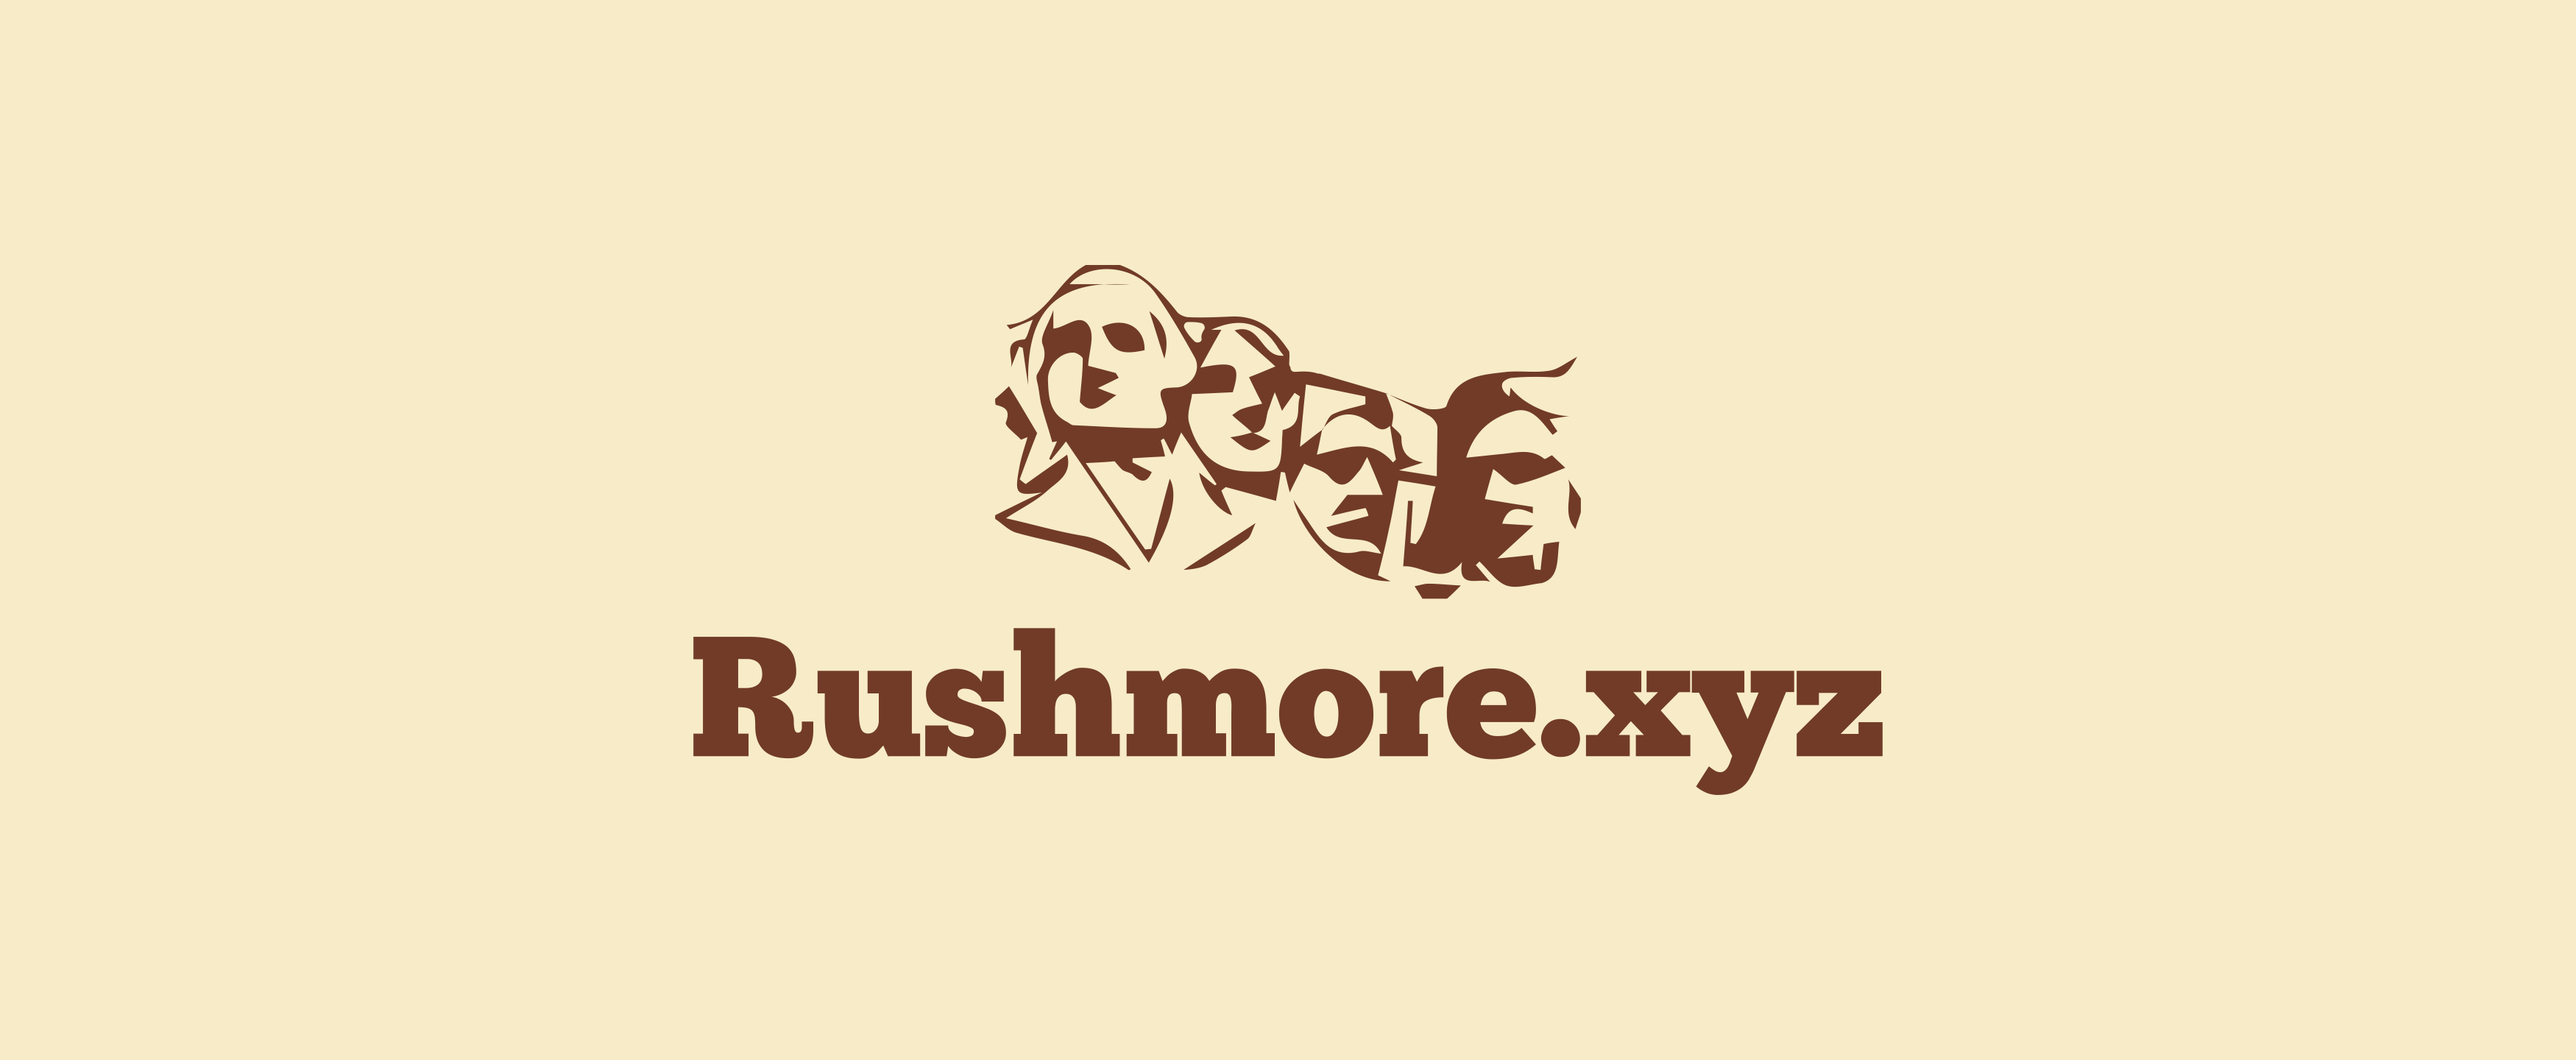 Rushmore.xyz